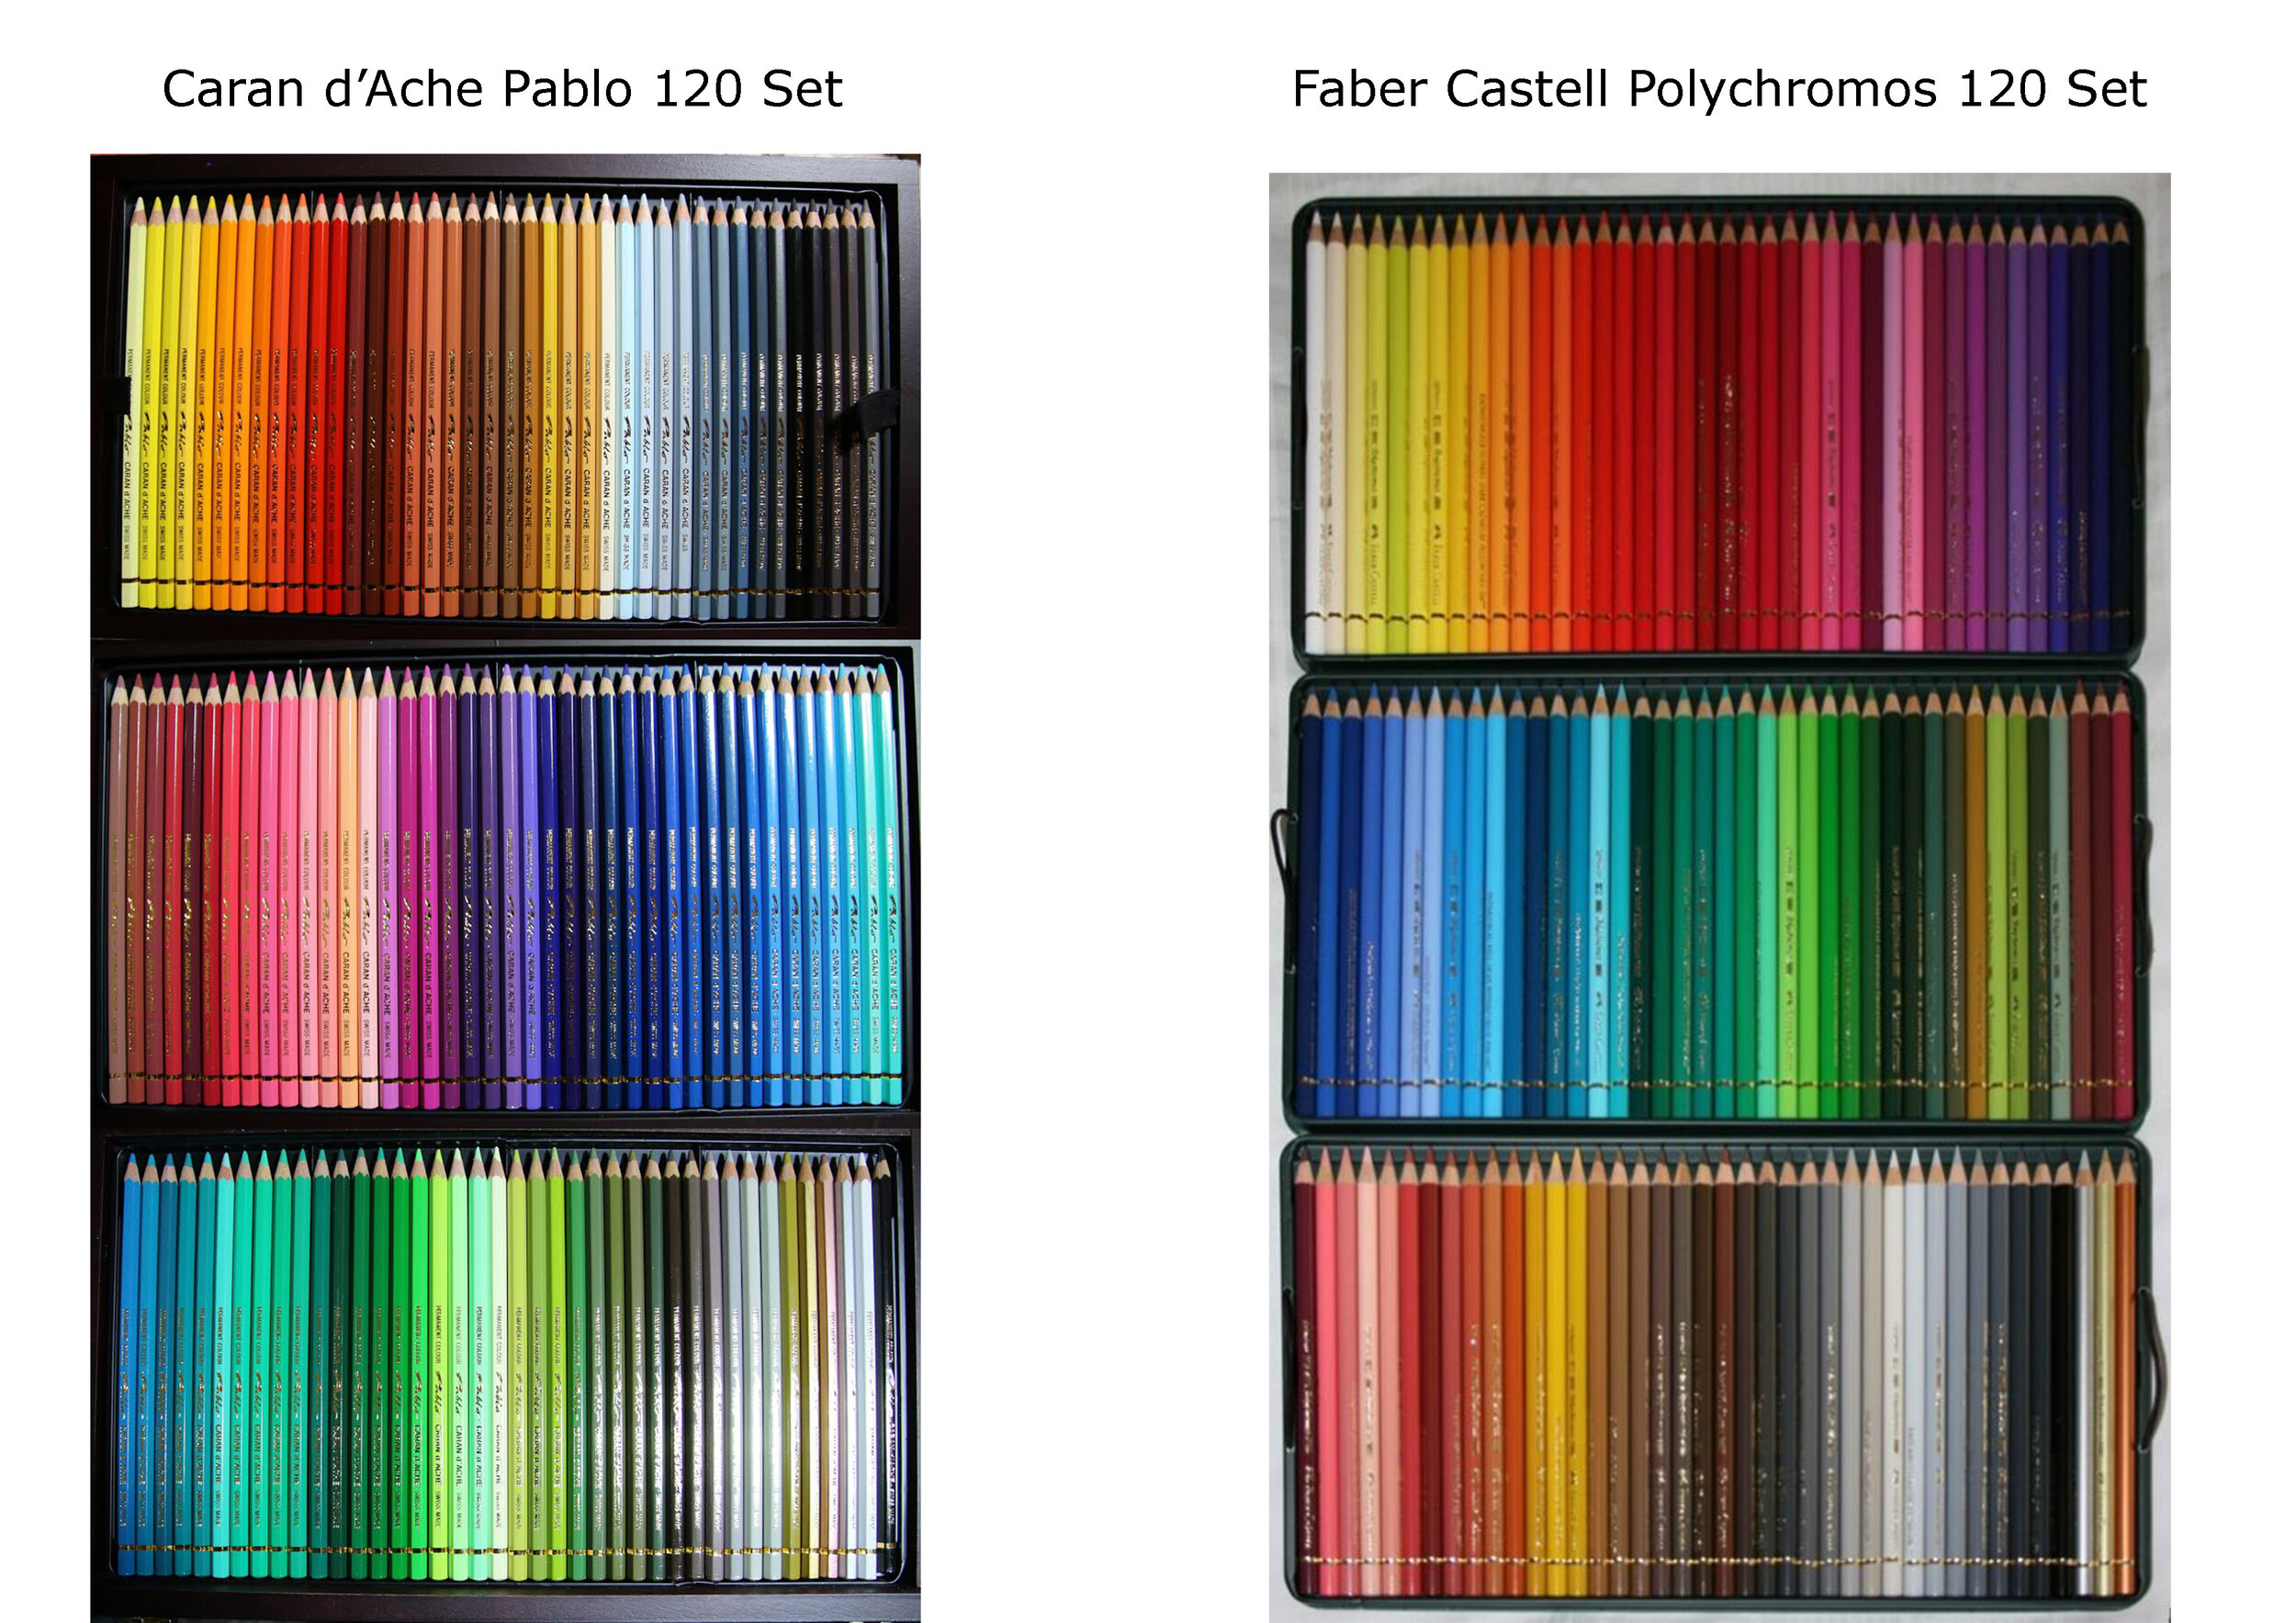 Caran Dache Pablo Versus Faber Castell Polychromos Comparison Review — The  Art Gear Guide